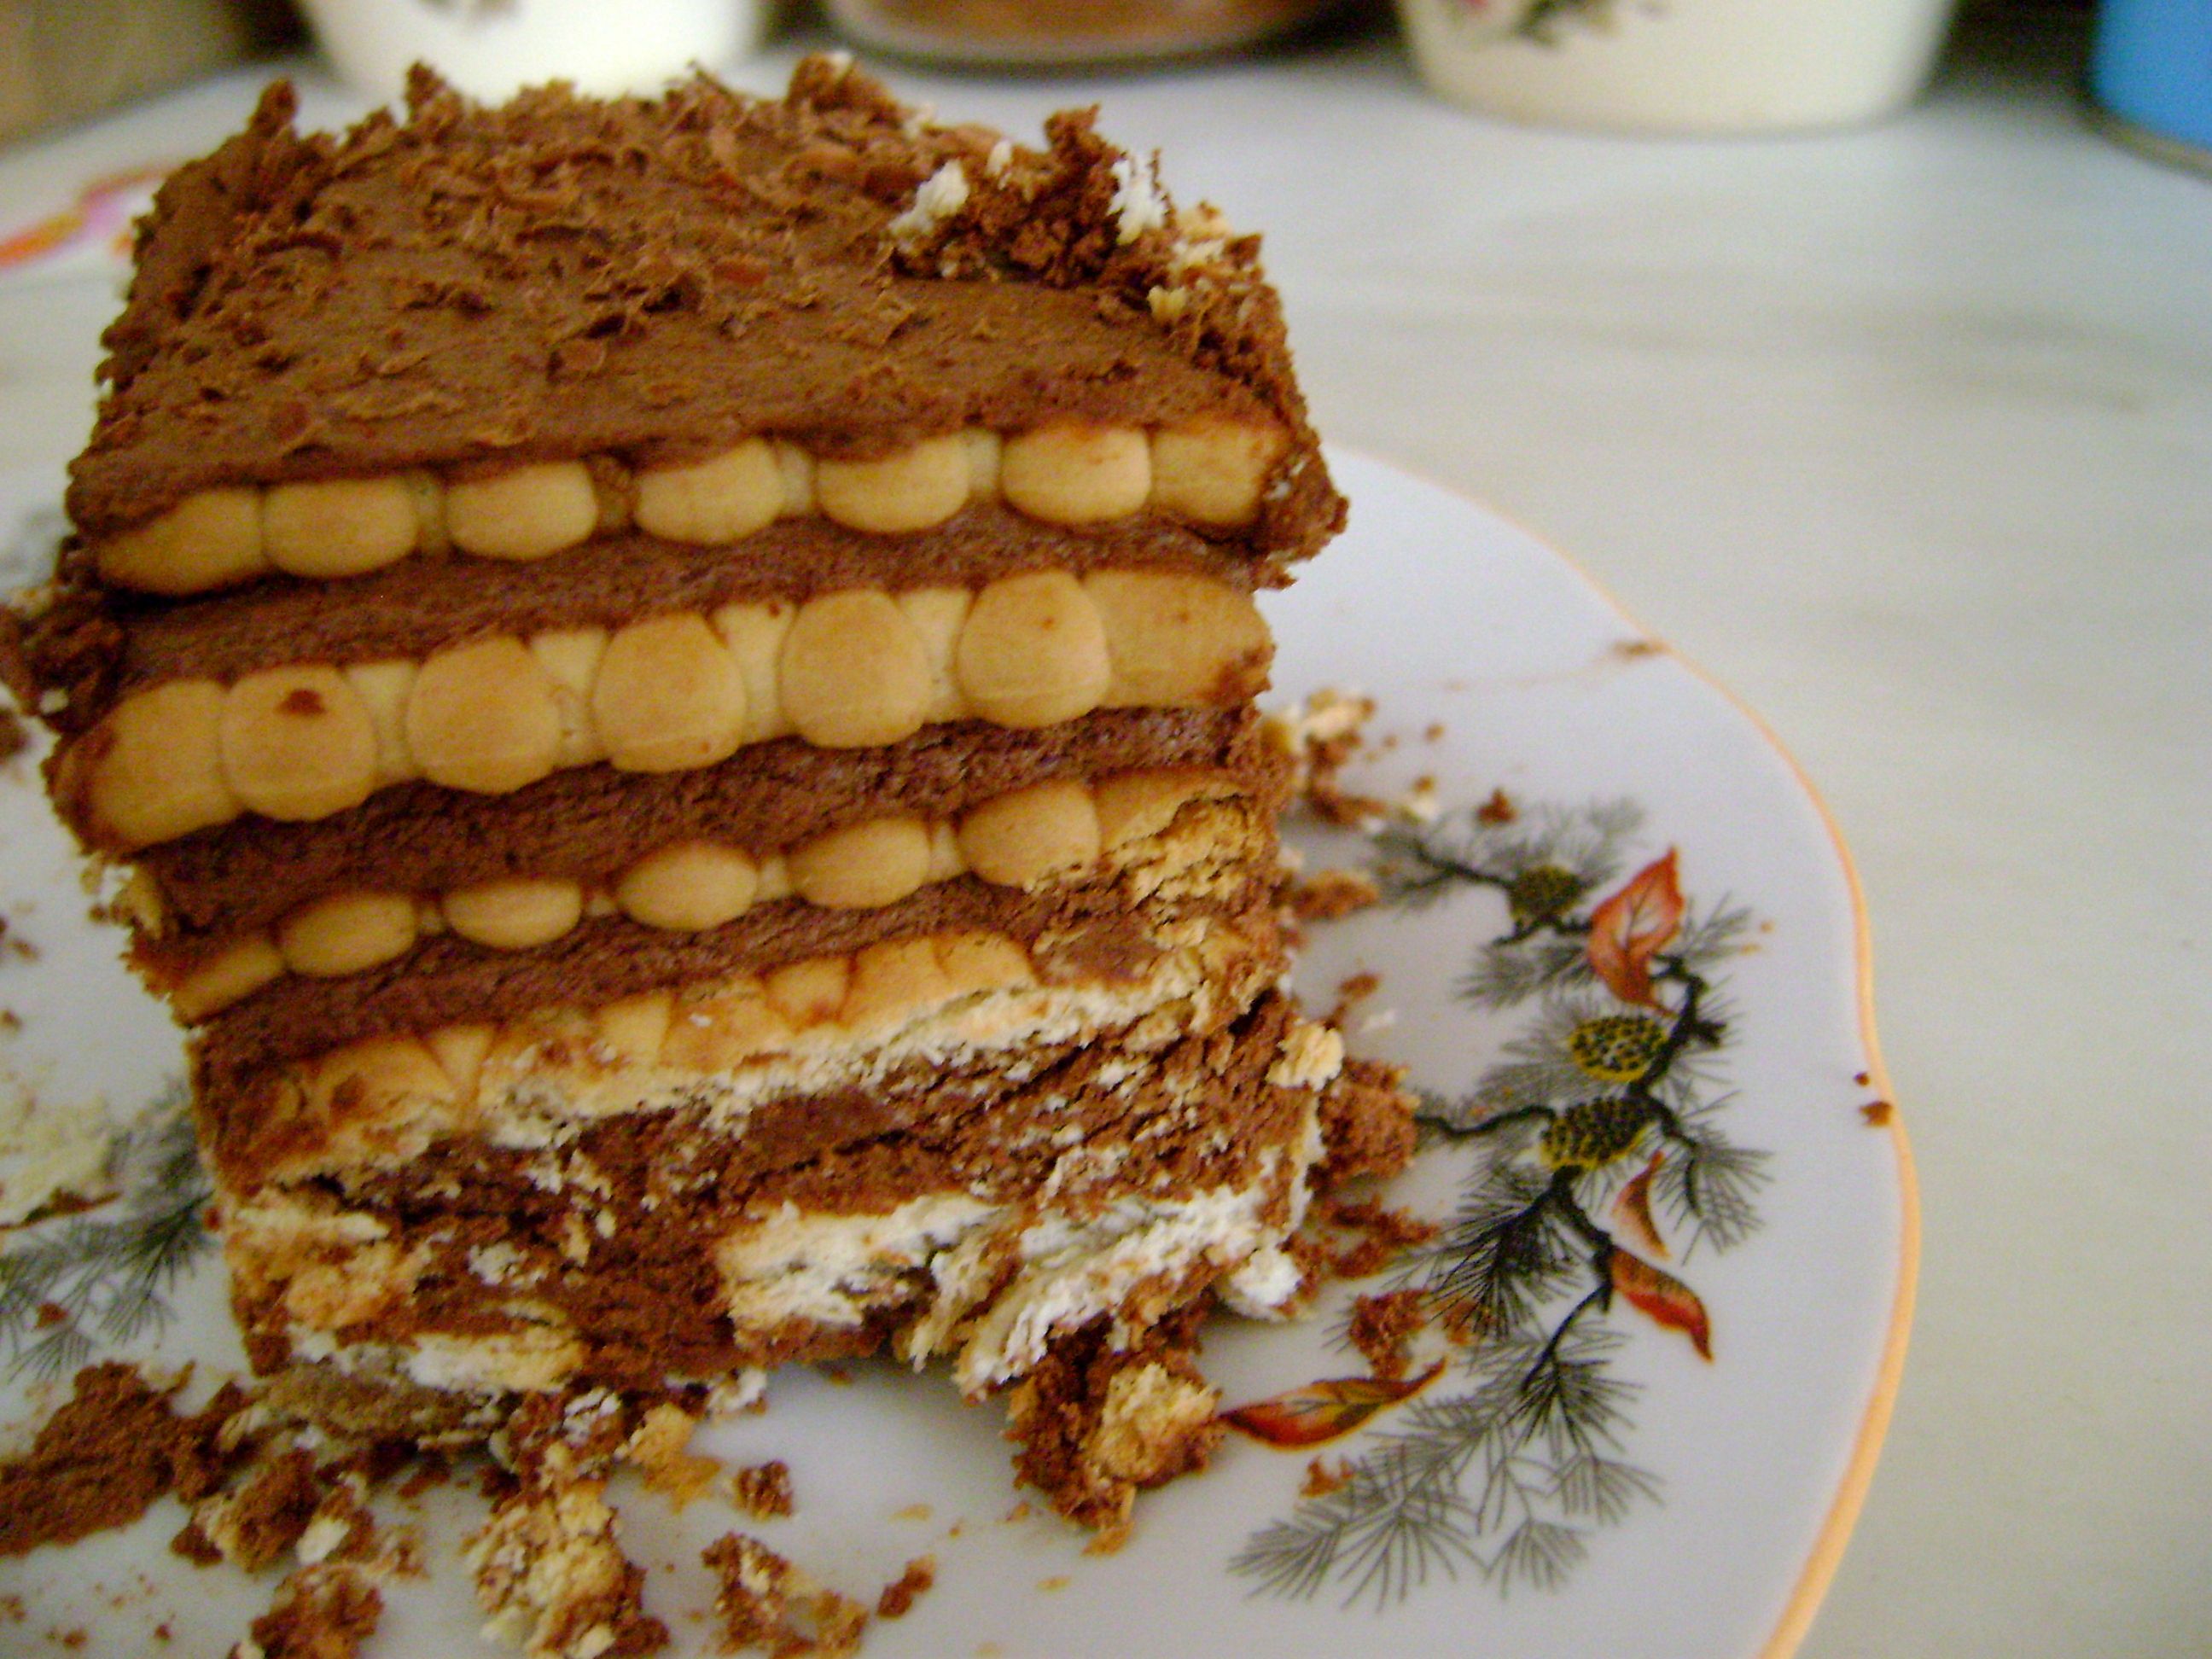 Фото песочных тортов. Песочный торт. Торт из песочных коржей. Тирамису. Фасолевый торт.